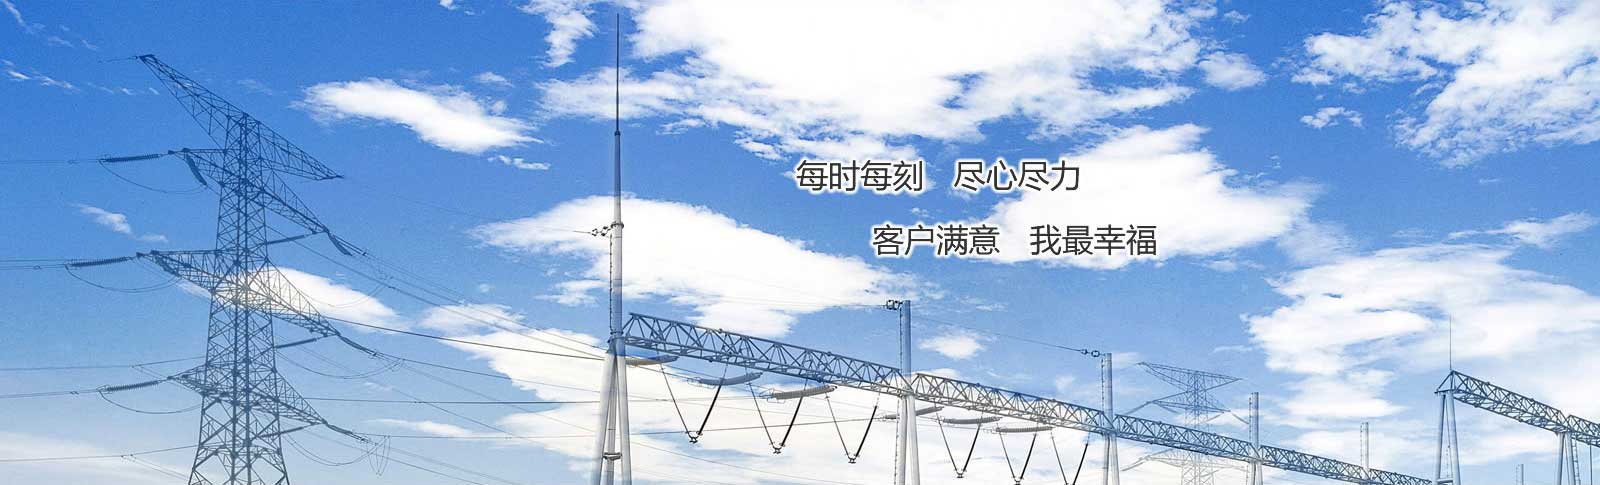 贵州电力抢修分享七项措施确保冬季施工安全